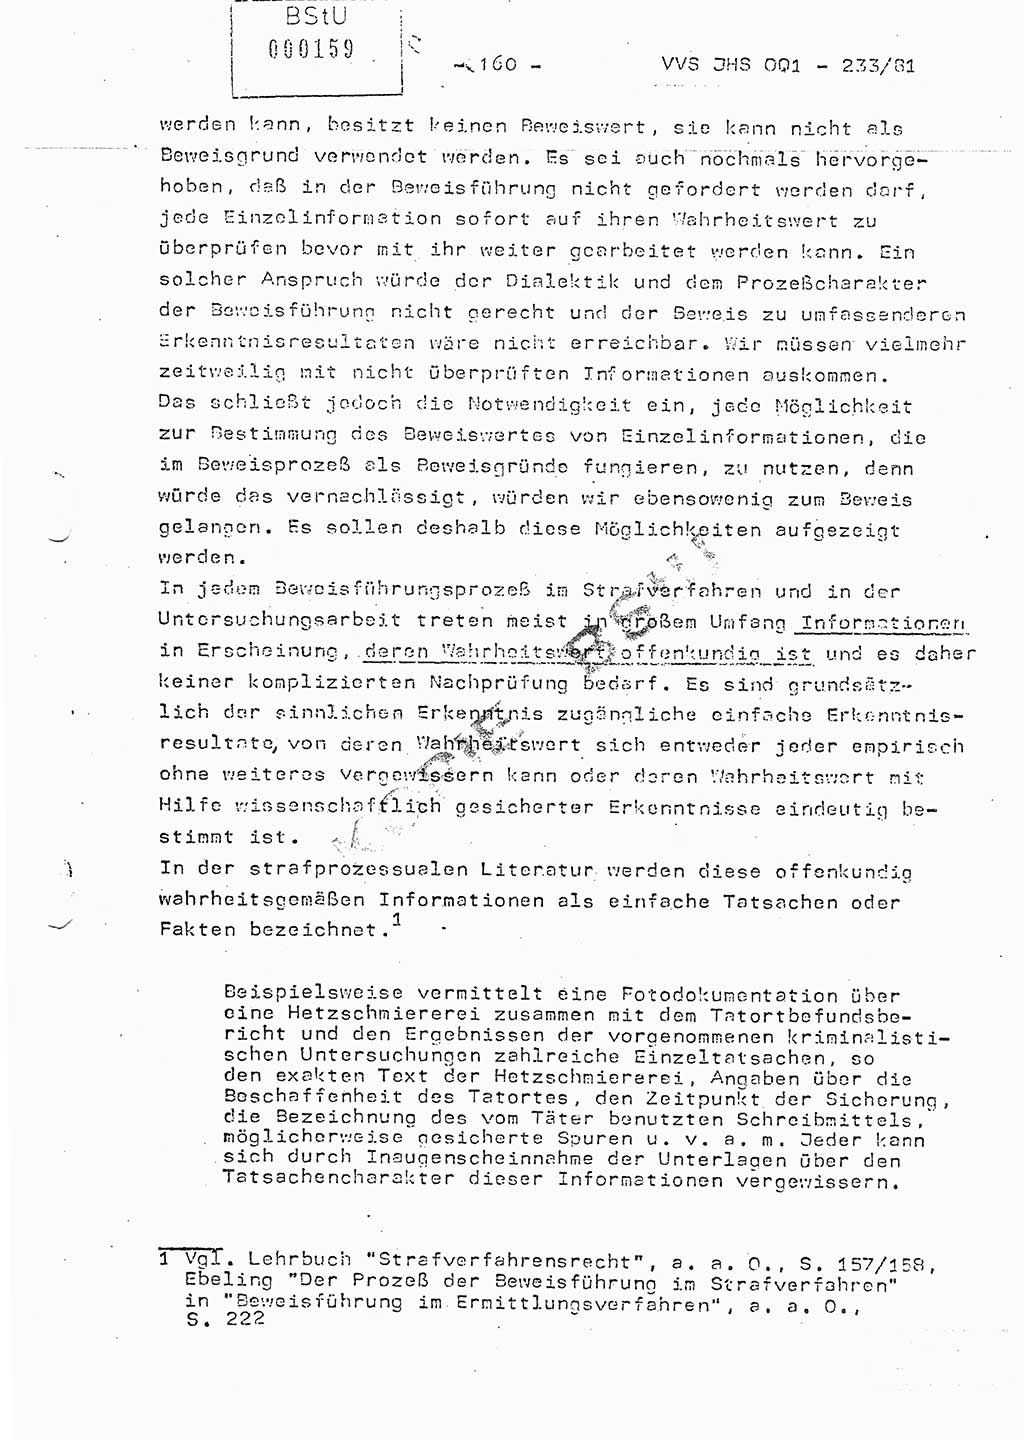 Dissertation Oberstleutnant Horst Zank (JHS), Oberstleutnant Dr. Karl-Heinz Knoblauch (JHS), Oberstleutnant Gustav-Adolf Kowalewski (HA Ⅸ), Oberstleutnant Wolfgang Plötner (HA Ⅸ), Ministerium für Staatssicherheit (MfS) [Deutsche Demokratische Republik (DDR)], Juristische Hochschule (JHS), Vertrauliche Verschlußsache (VVS) o001-233/81, Potsdam 1981, Blatt 160 (Diss. MfS DDR JHS VVS o001-233/81 1981, Bl. 160)